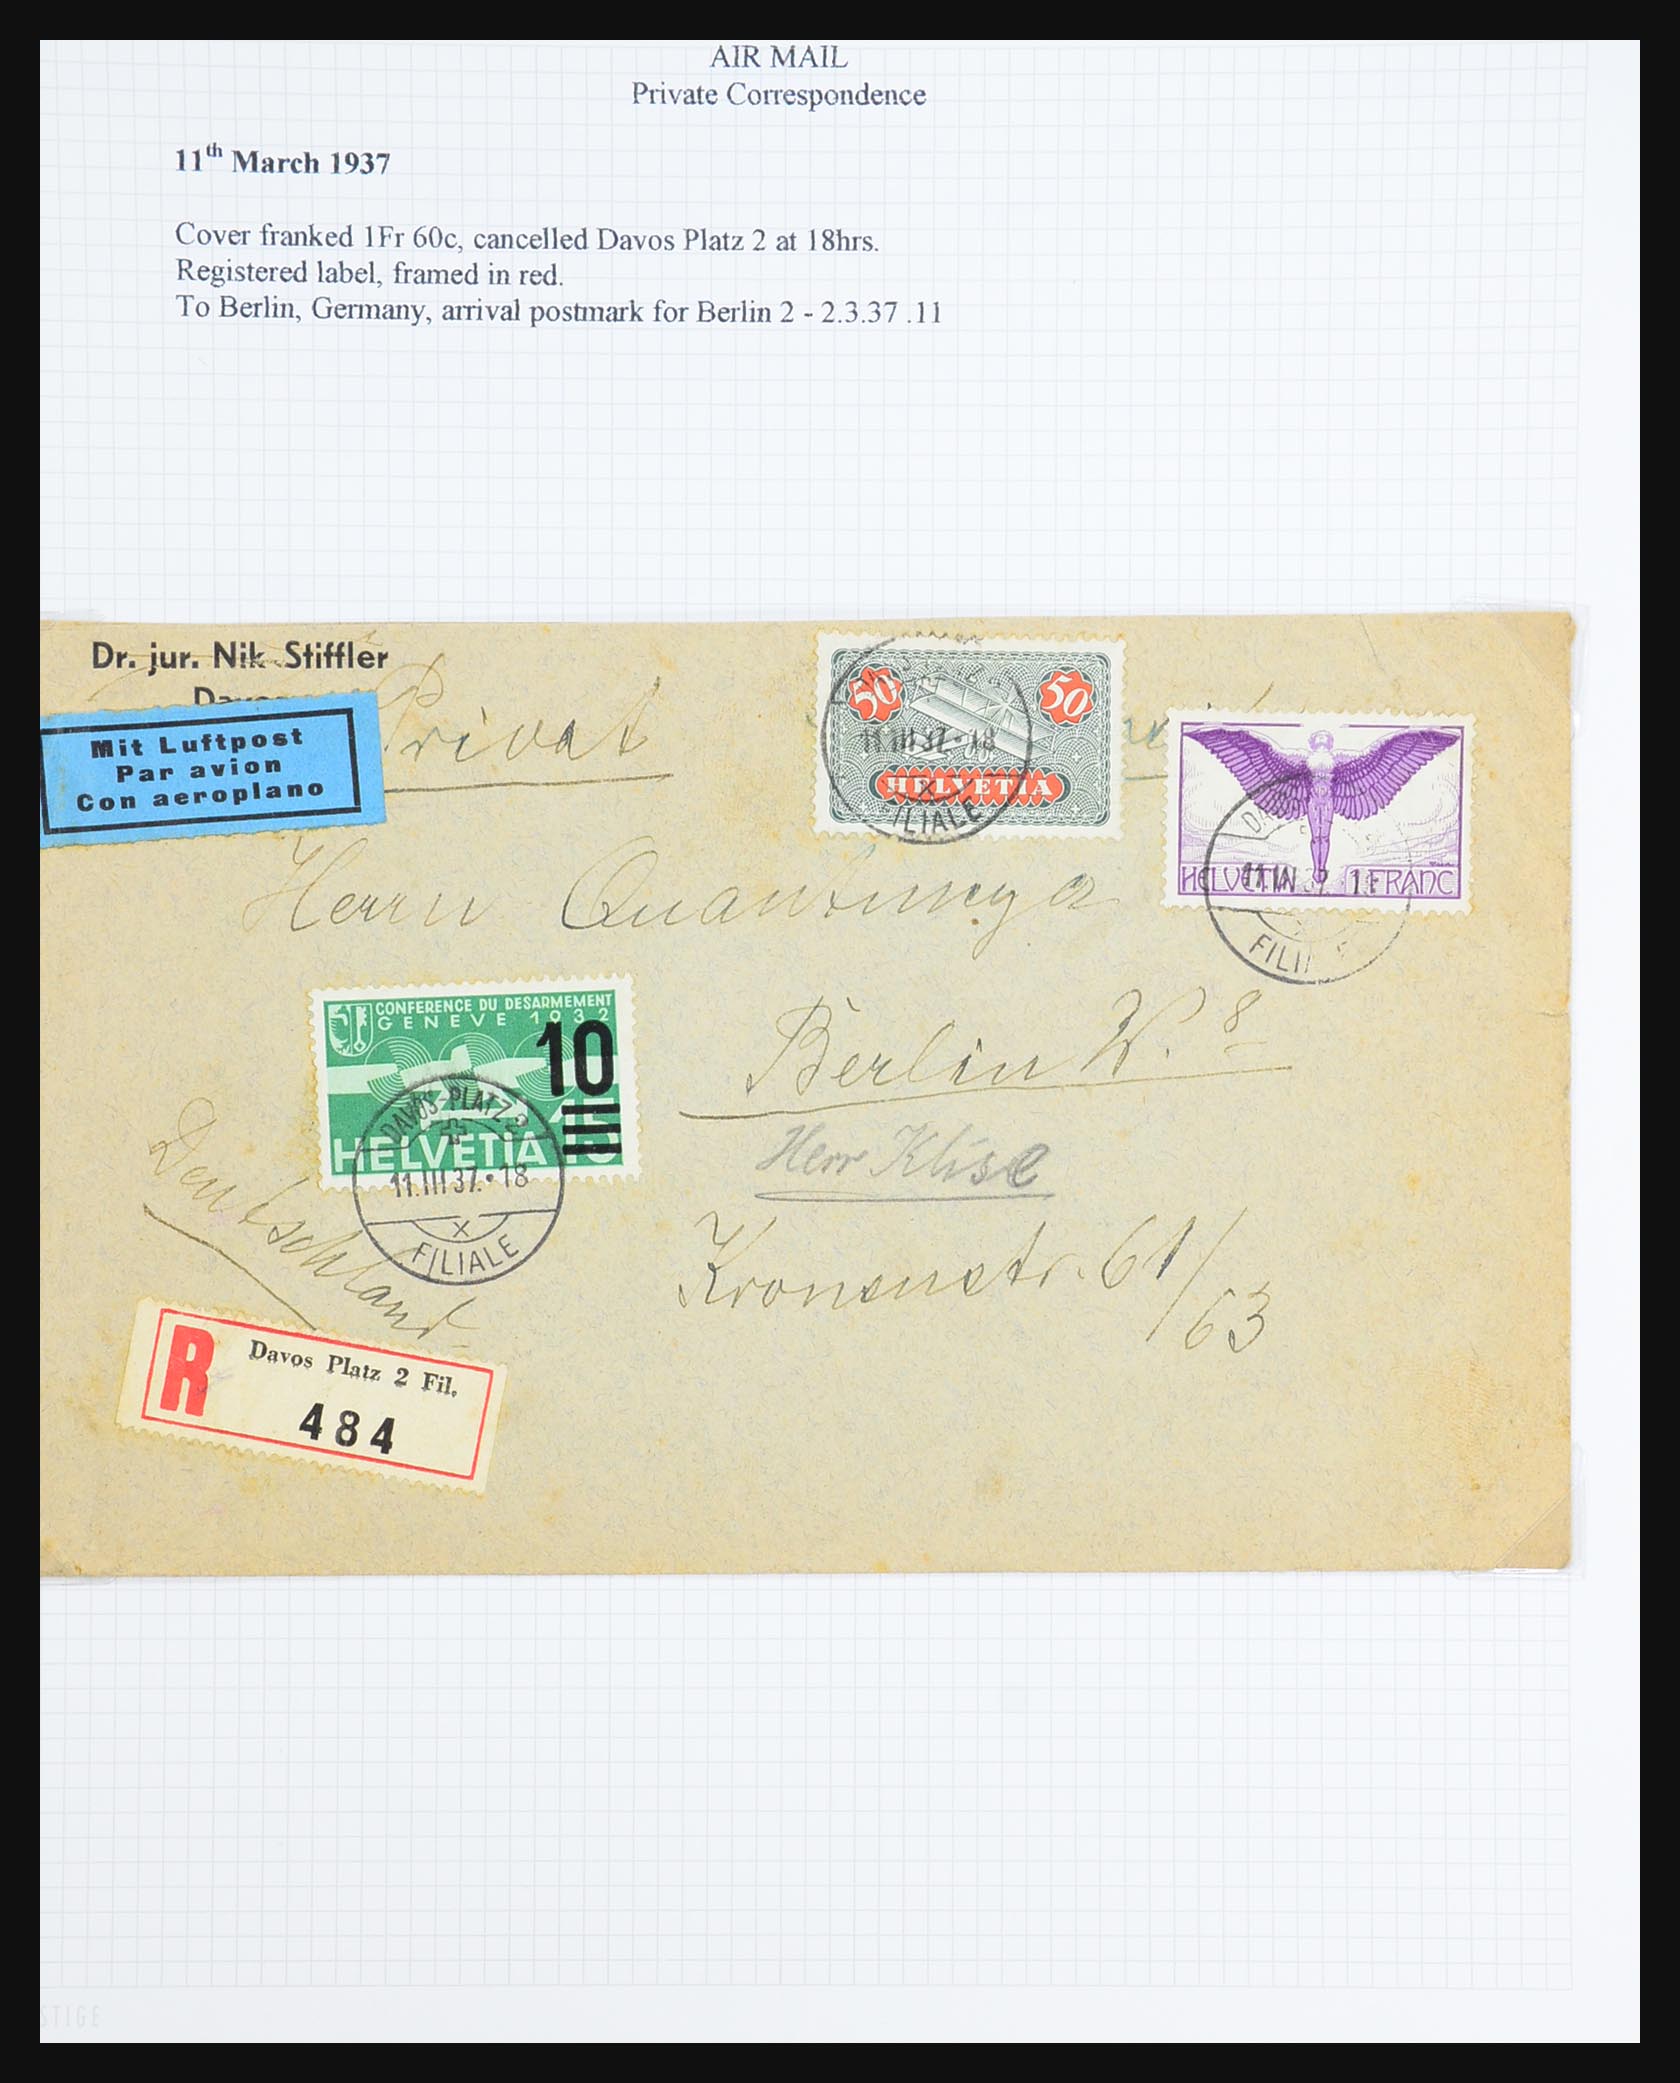 31444 084 - 31444 Switzerland airmail covers 1922-1946.